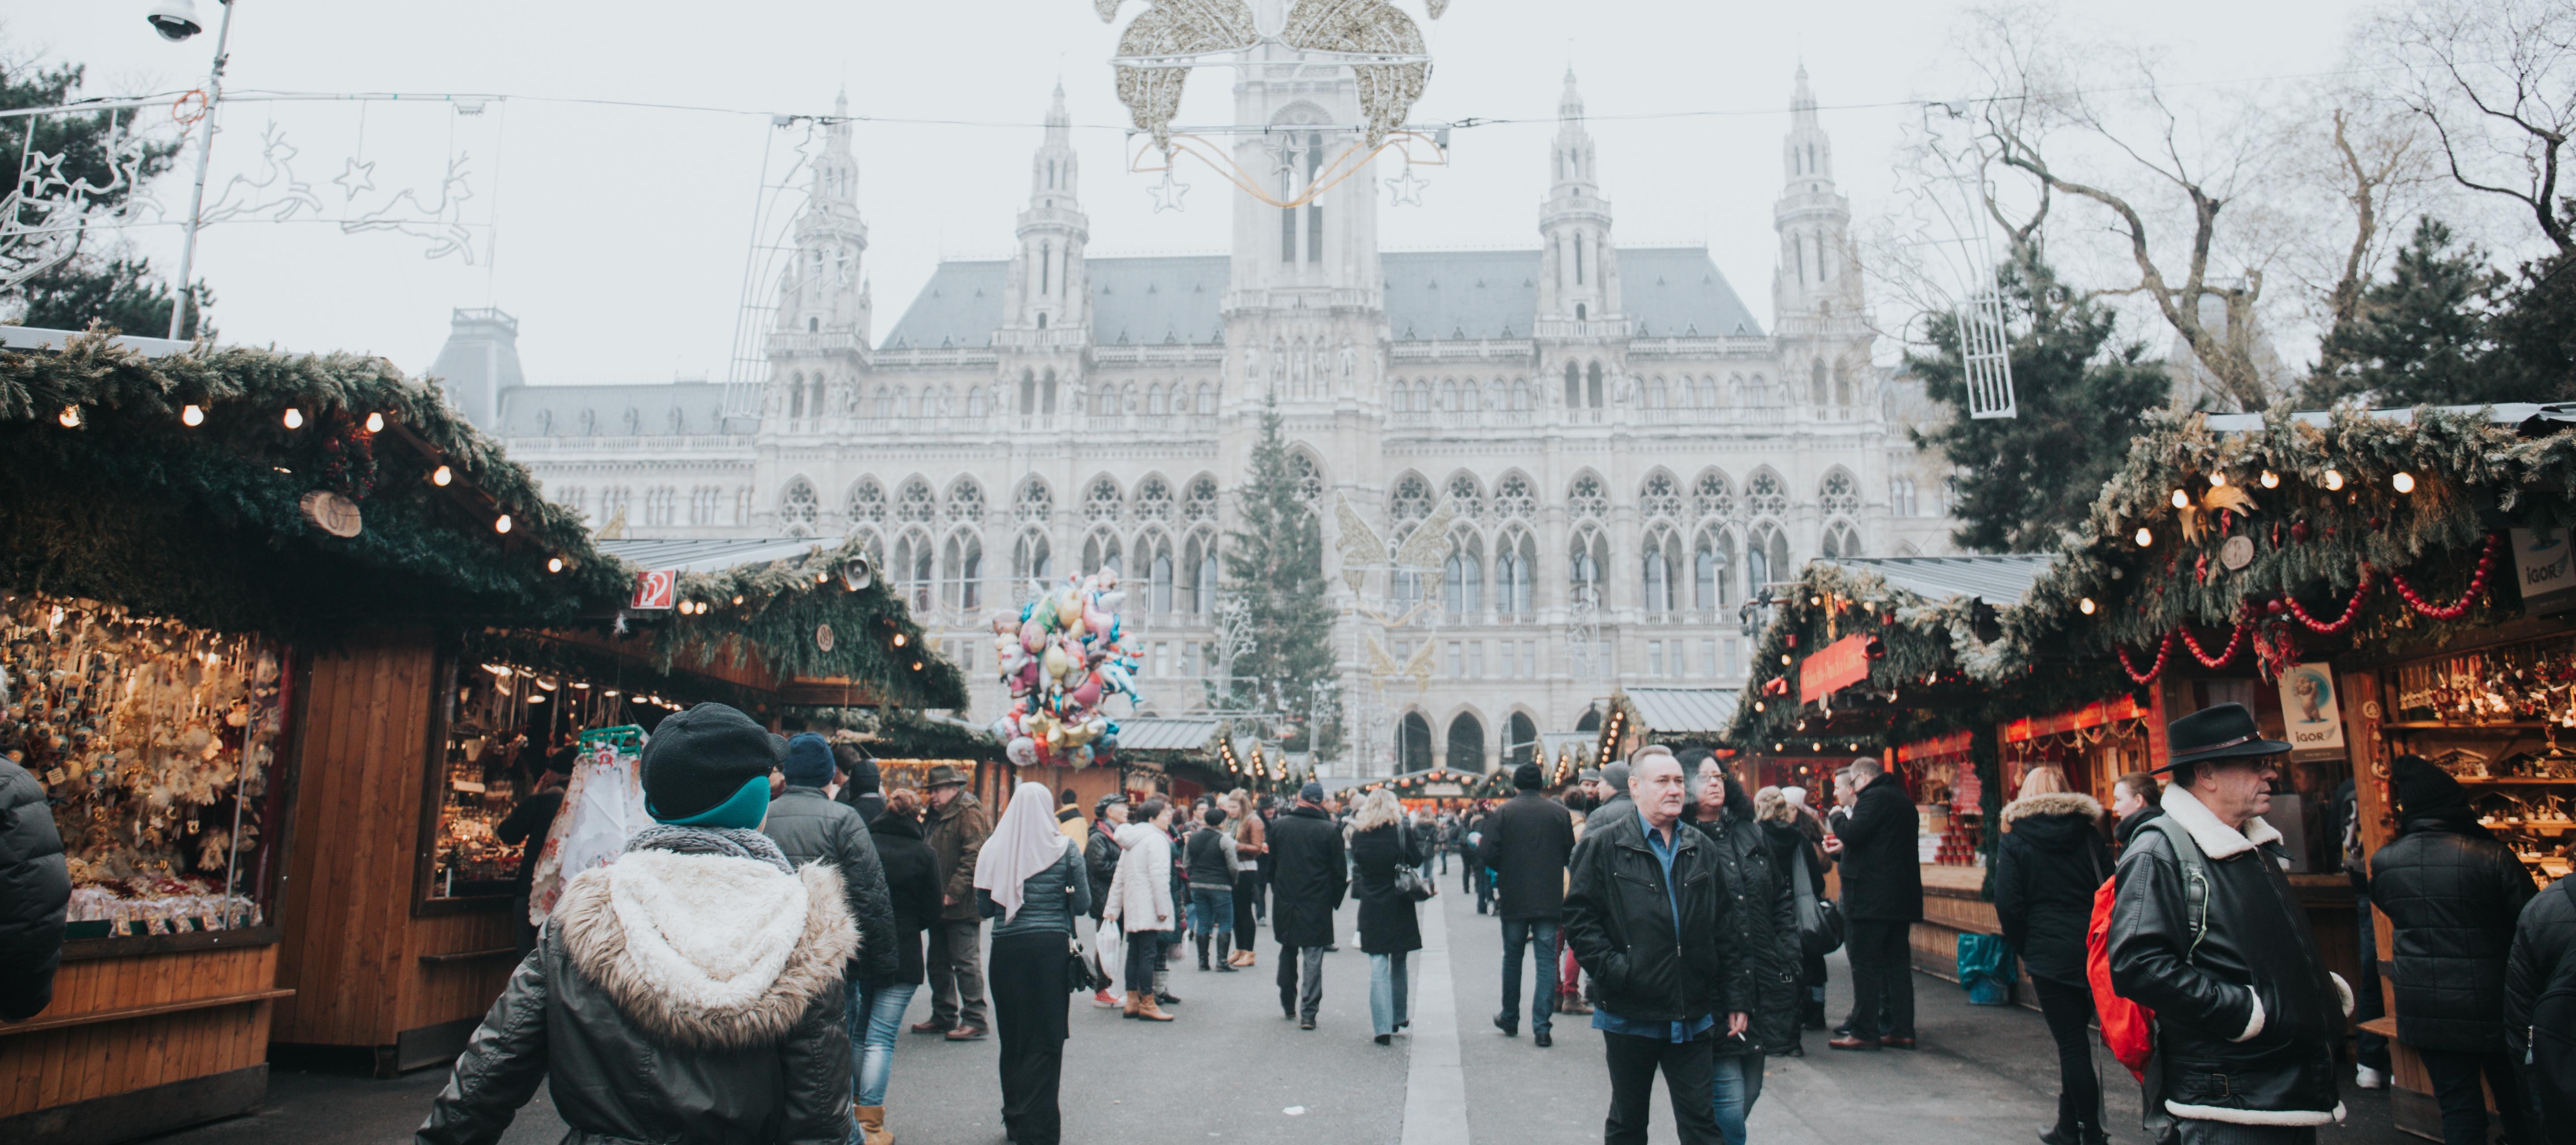 Christmas markets in Vienna, Austria